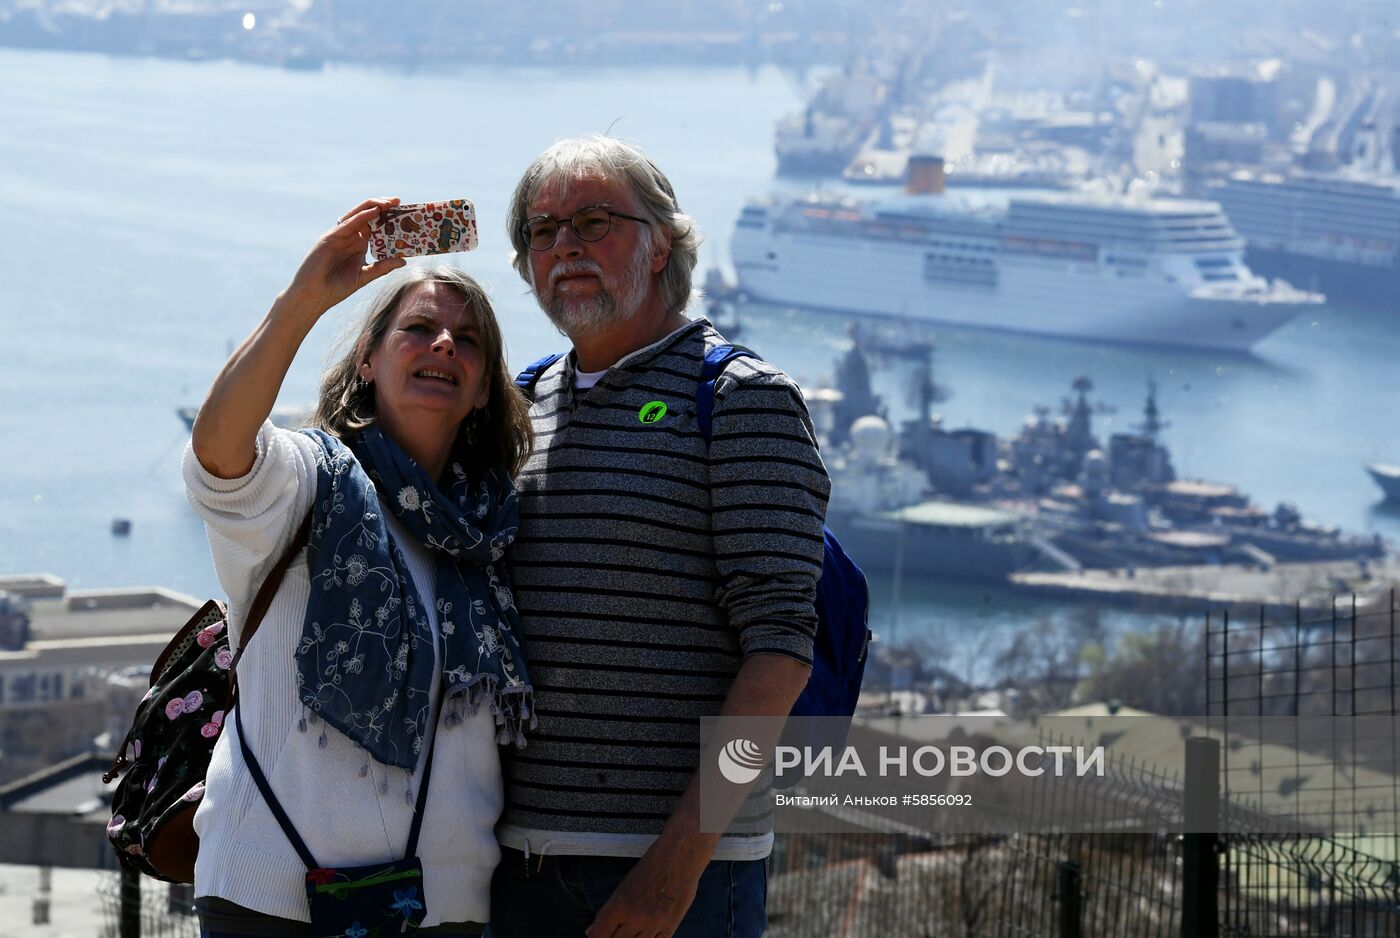 Прибытие круизных лайнеров Costa neoRomantica и Westerdam в порт Владивостока